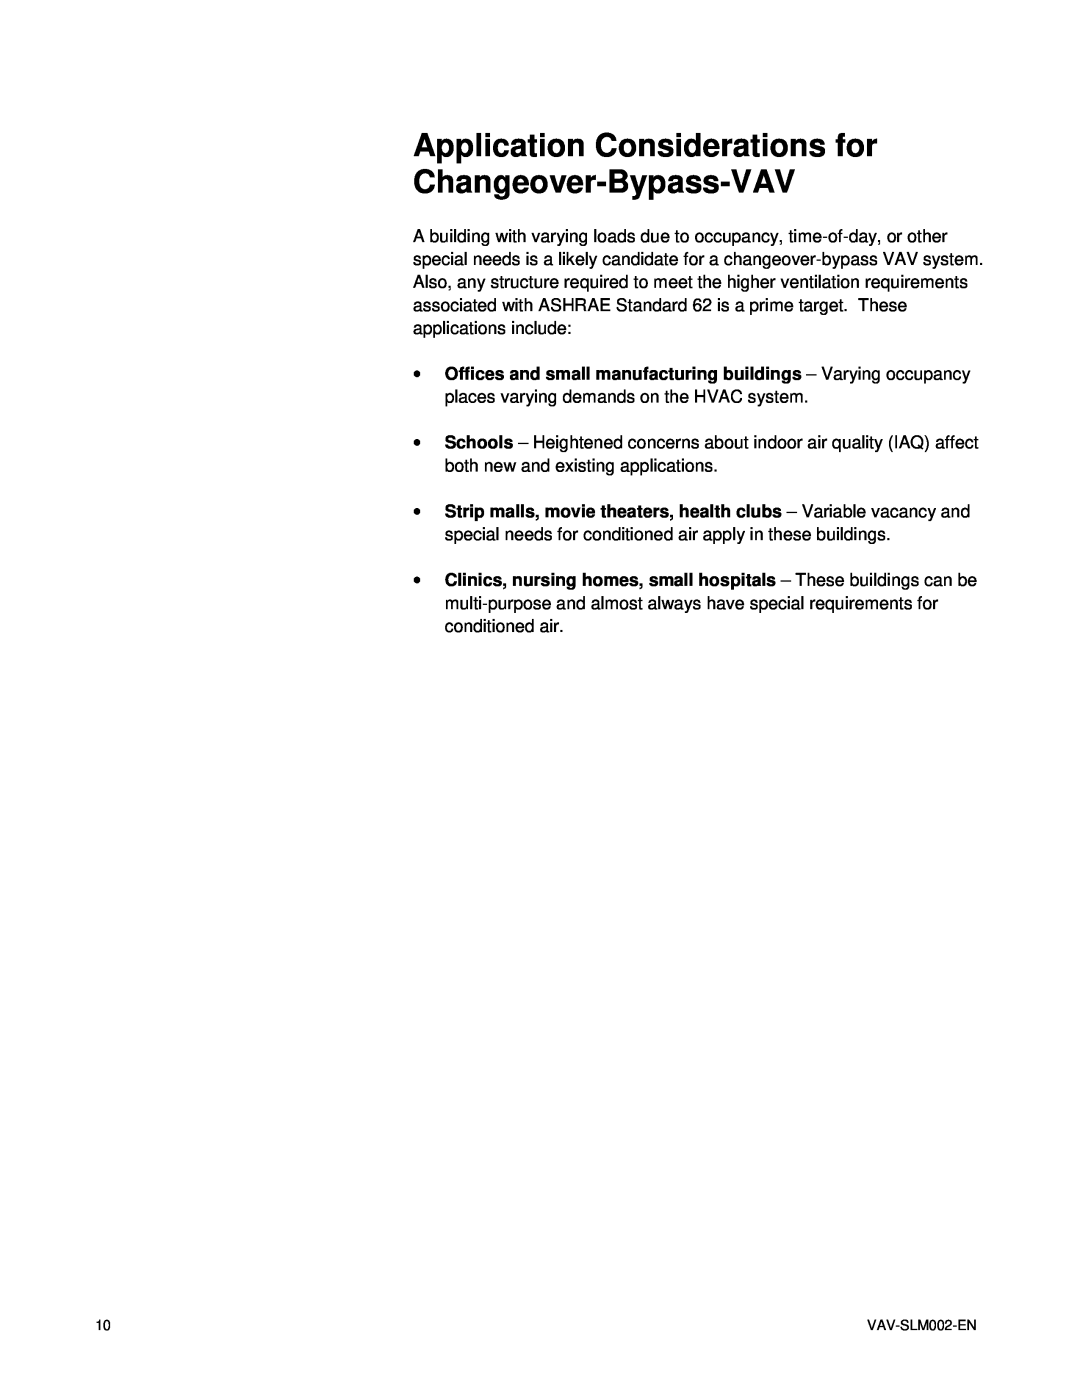 Trane VAV-SLM002-EN, VariTrac Changeover-Bypass VAV Systems manual Application Considerations for Changeover-Bypass-VAV 